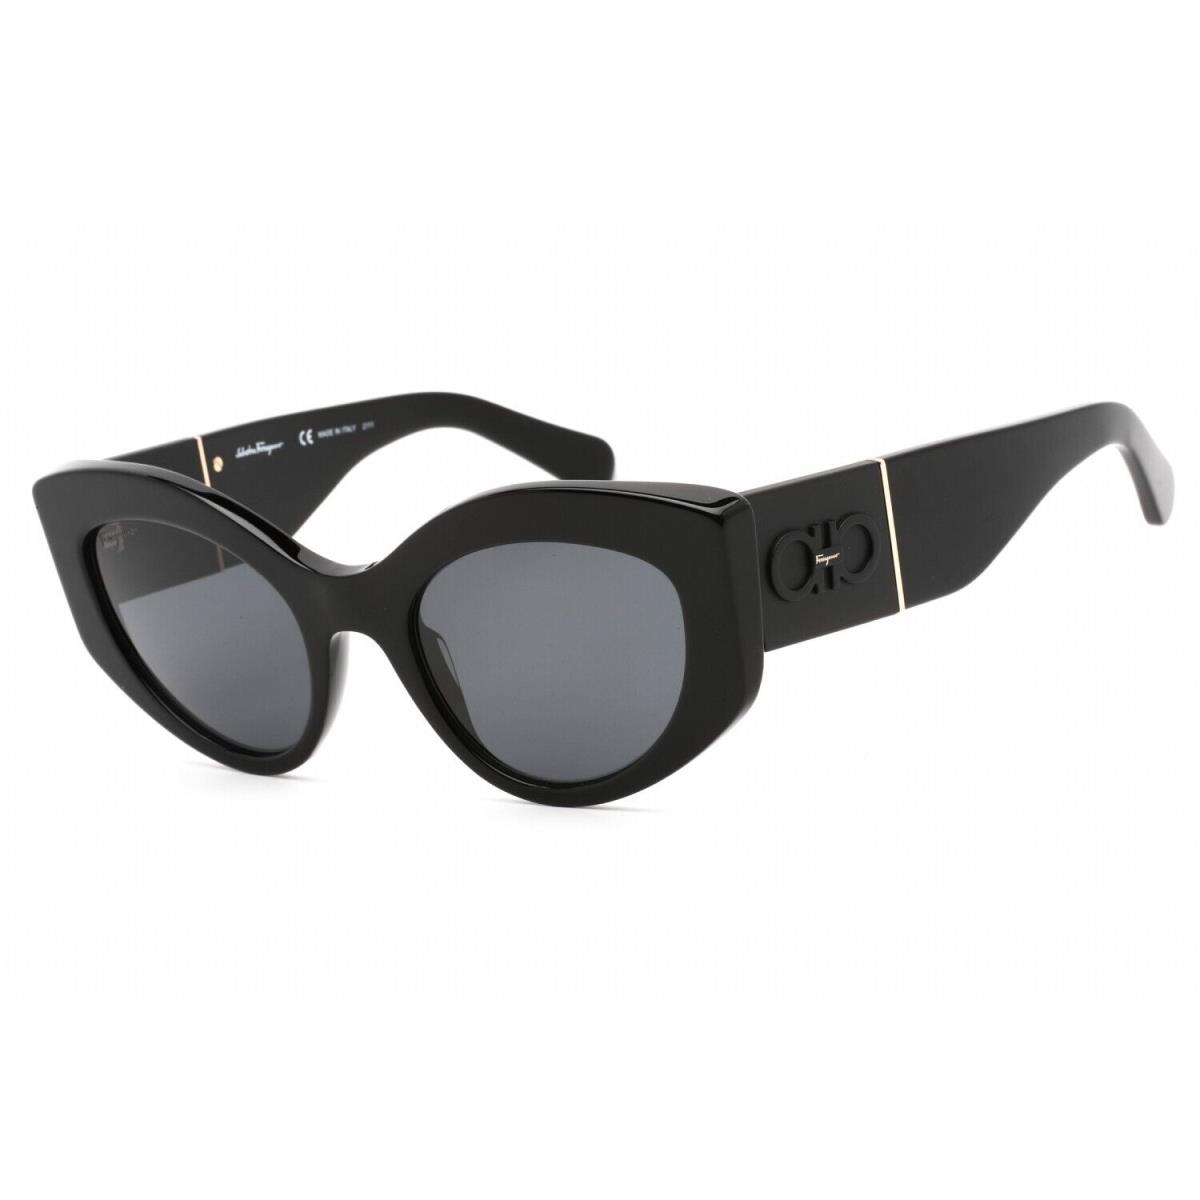 Salvatore Ferragamo SF1044S 001 Black/grey Lens Cateye Sunglasses 53mm